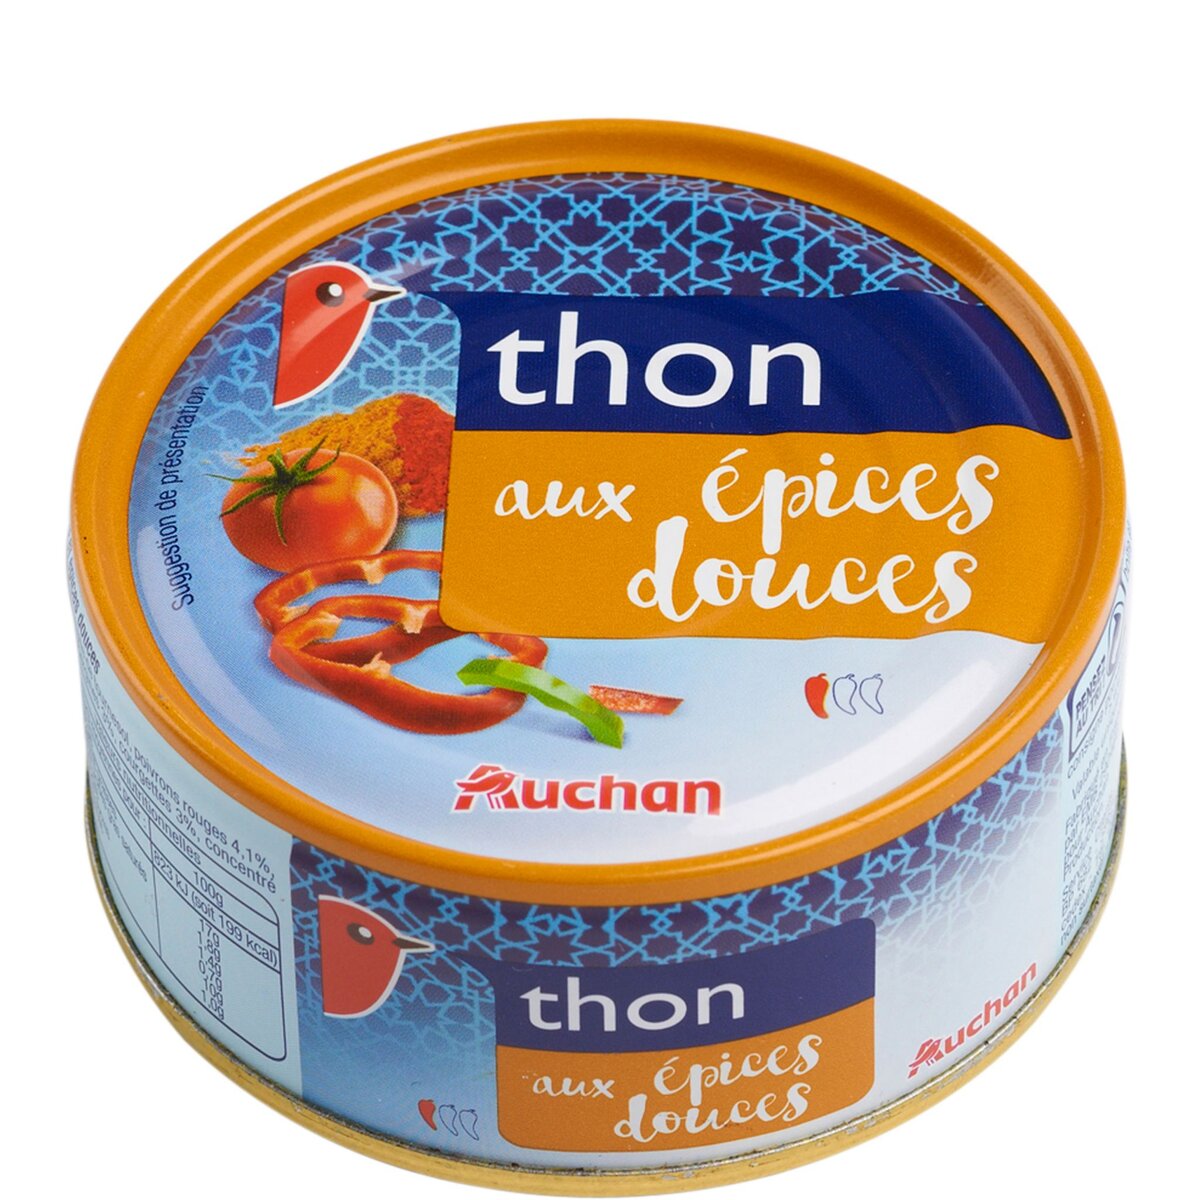 AUCHAN Thon aux épices douces 160g